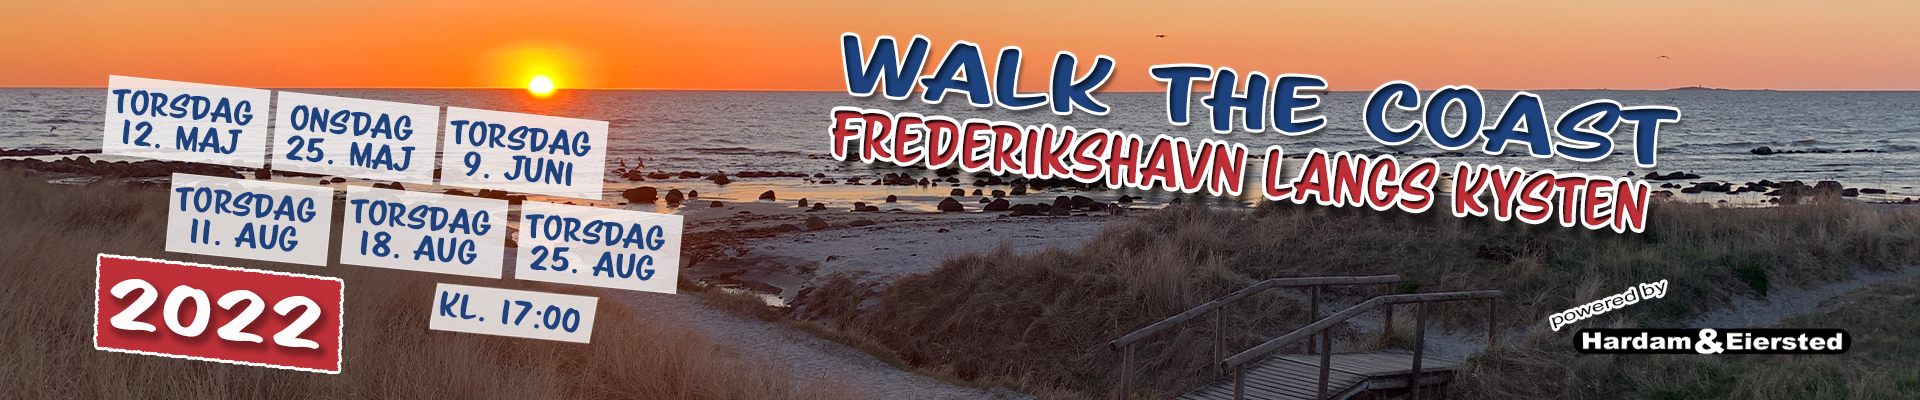 Walk the Coast - Frederikshavn langs kysten 2022